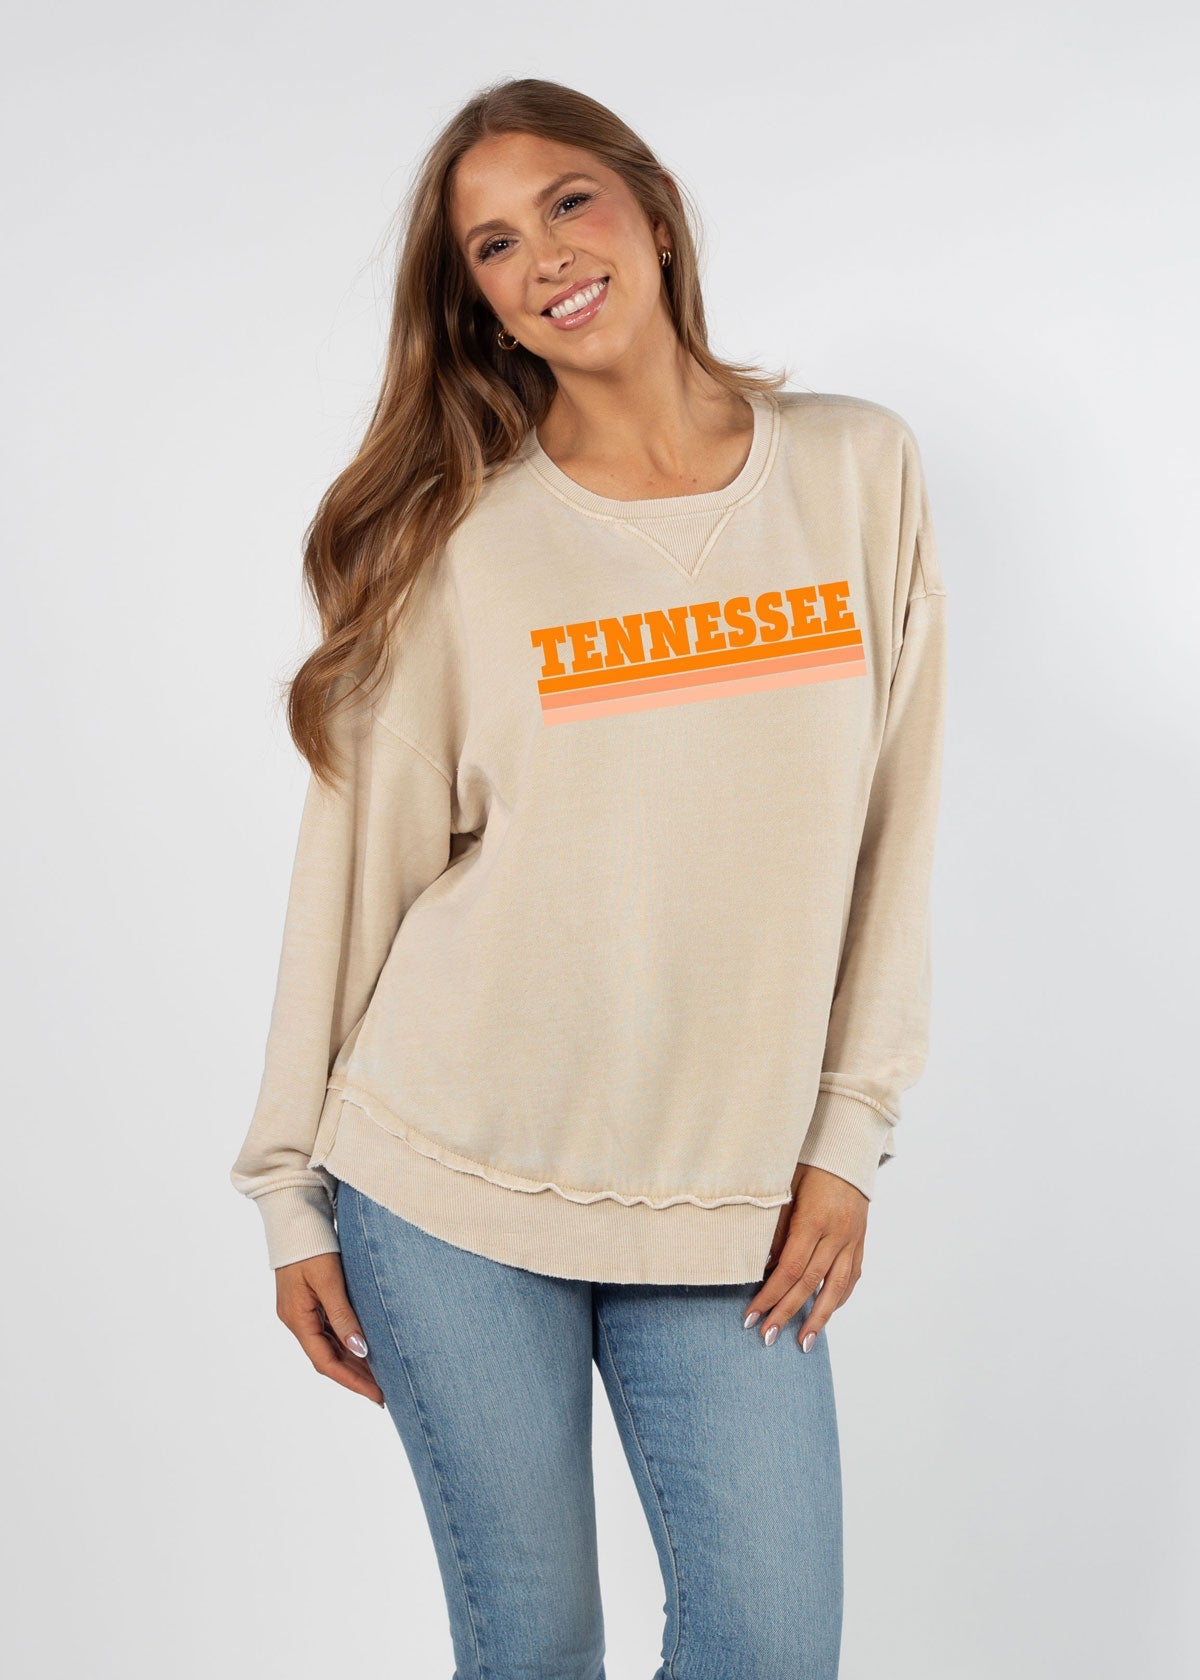 Tennessee Volunteers sweatshirt